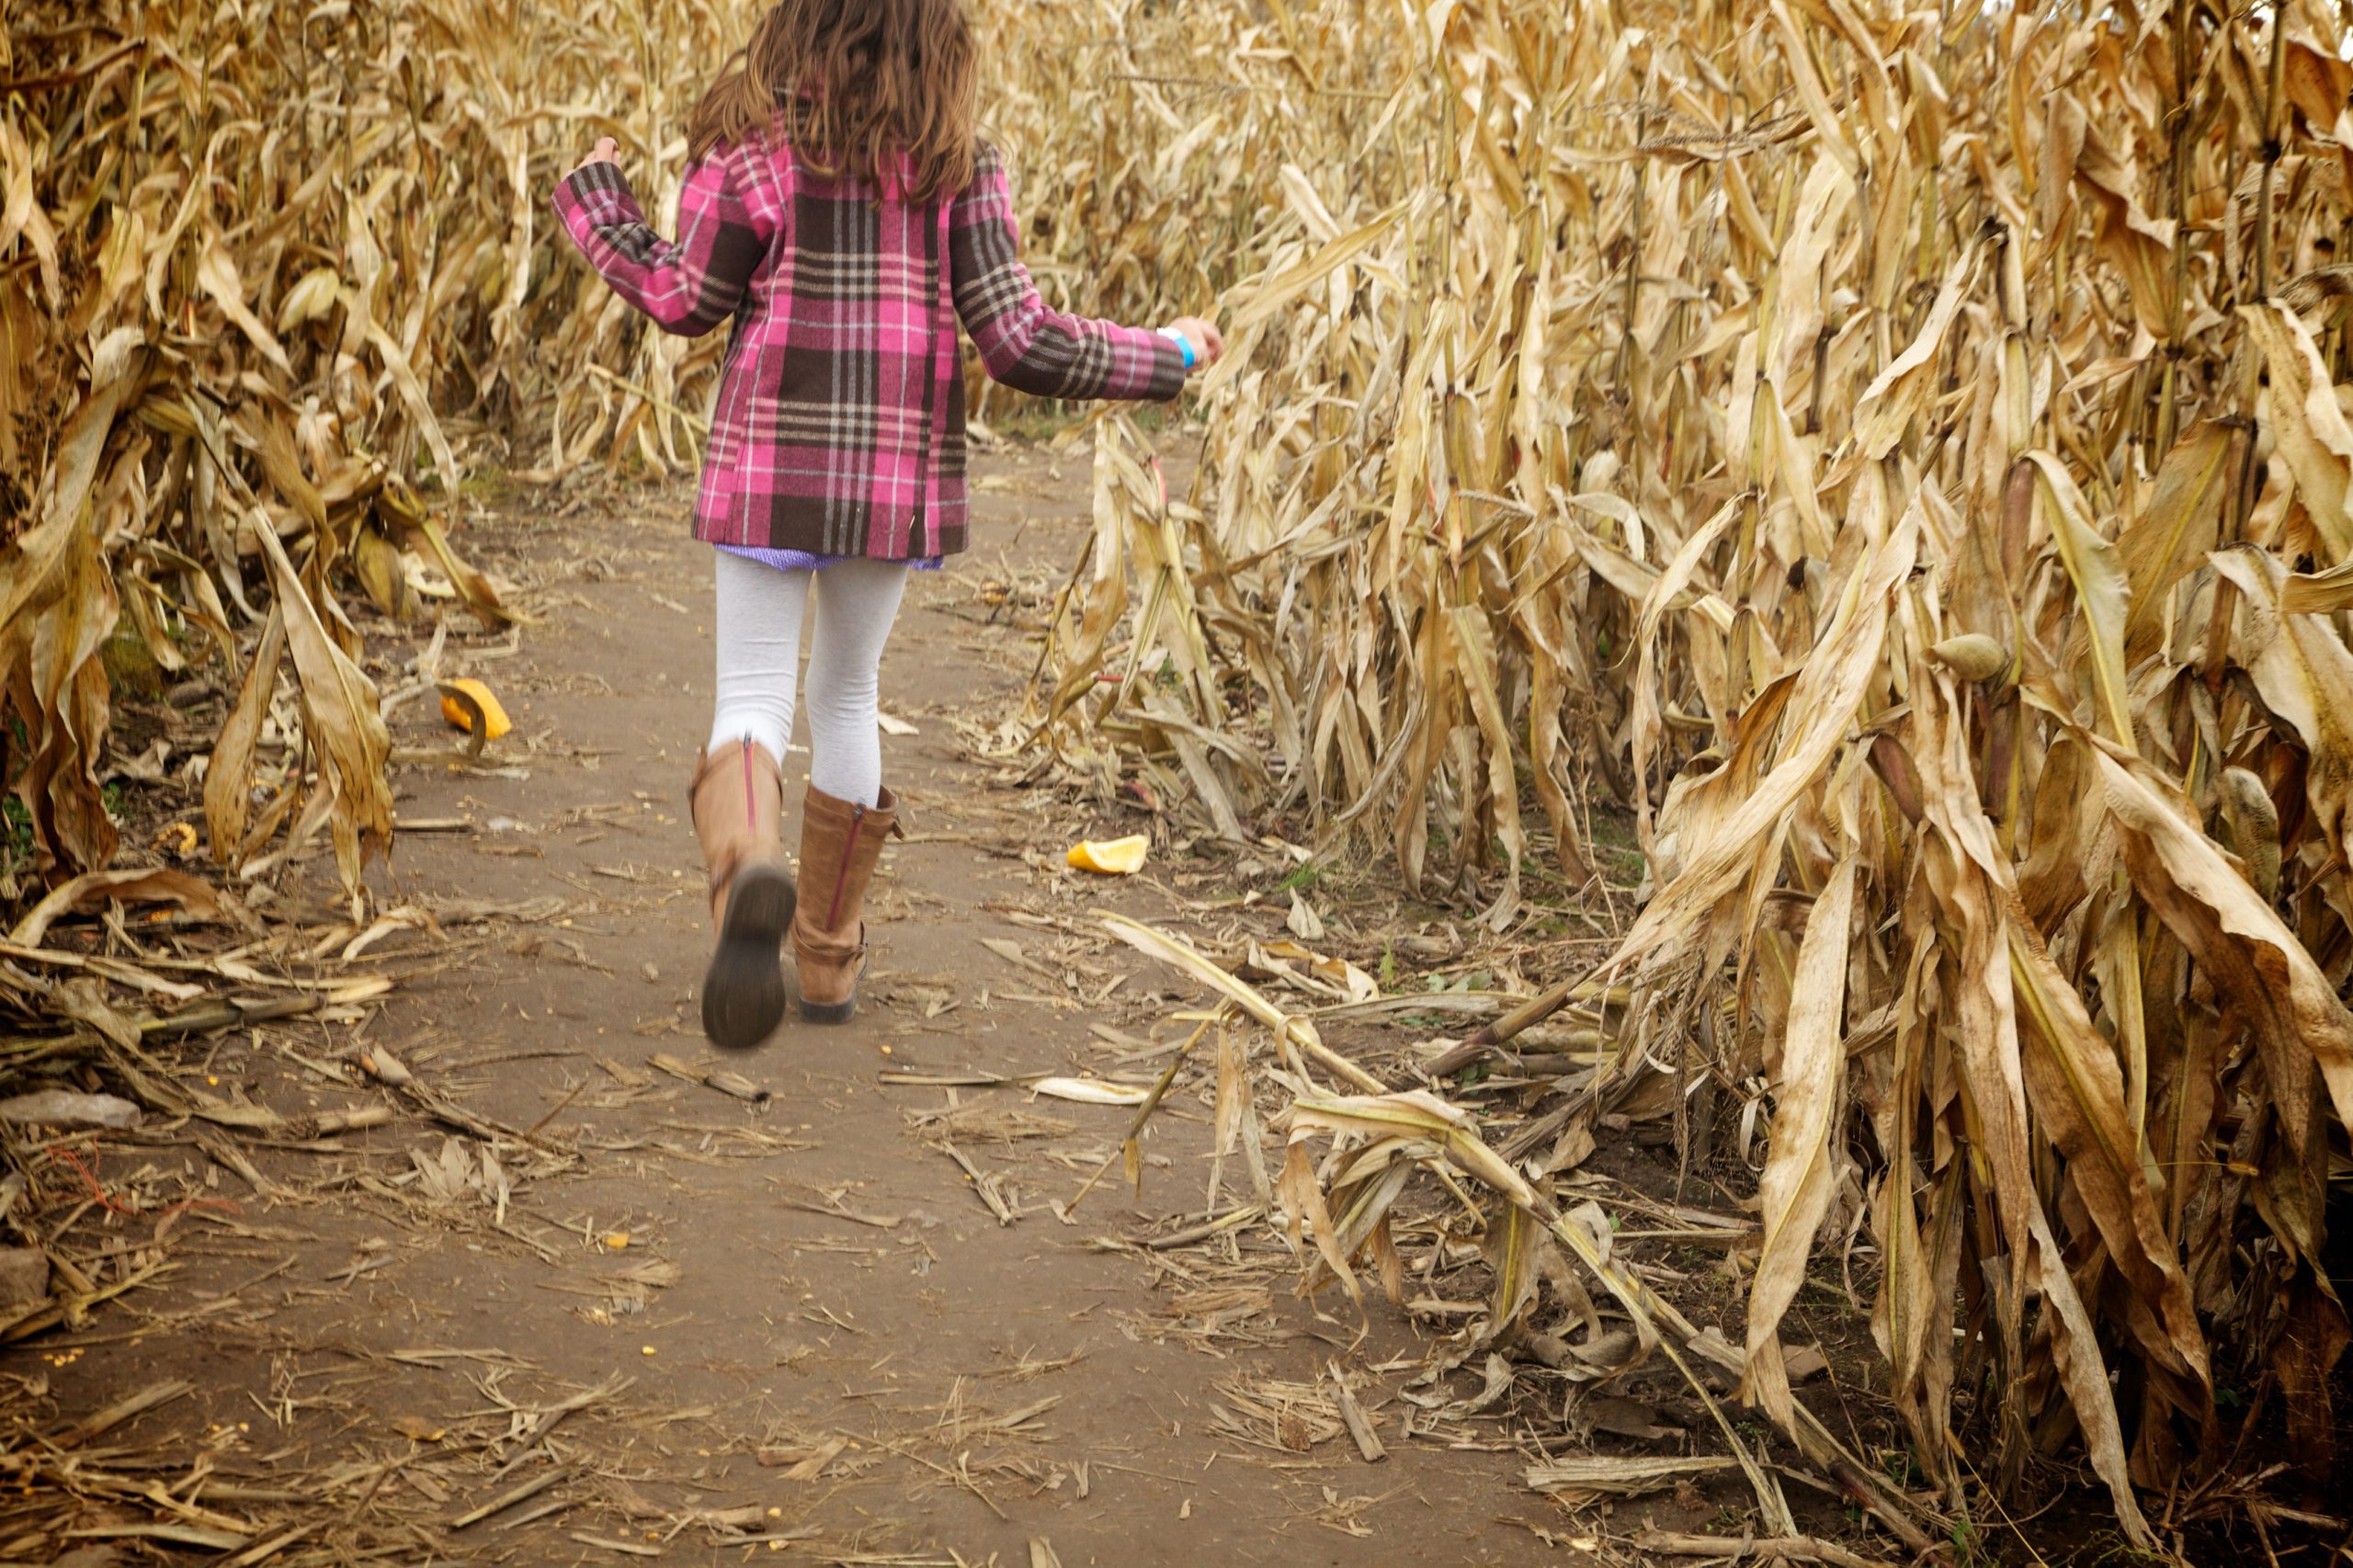 A young girl runs through a corn maze